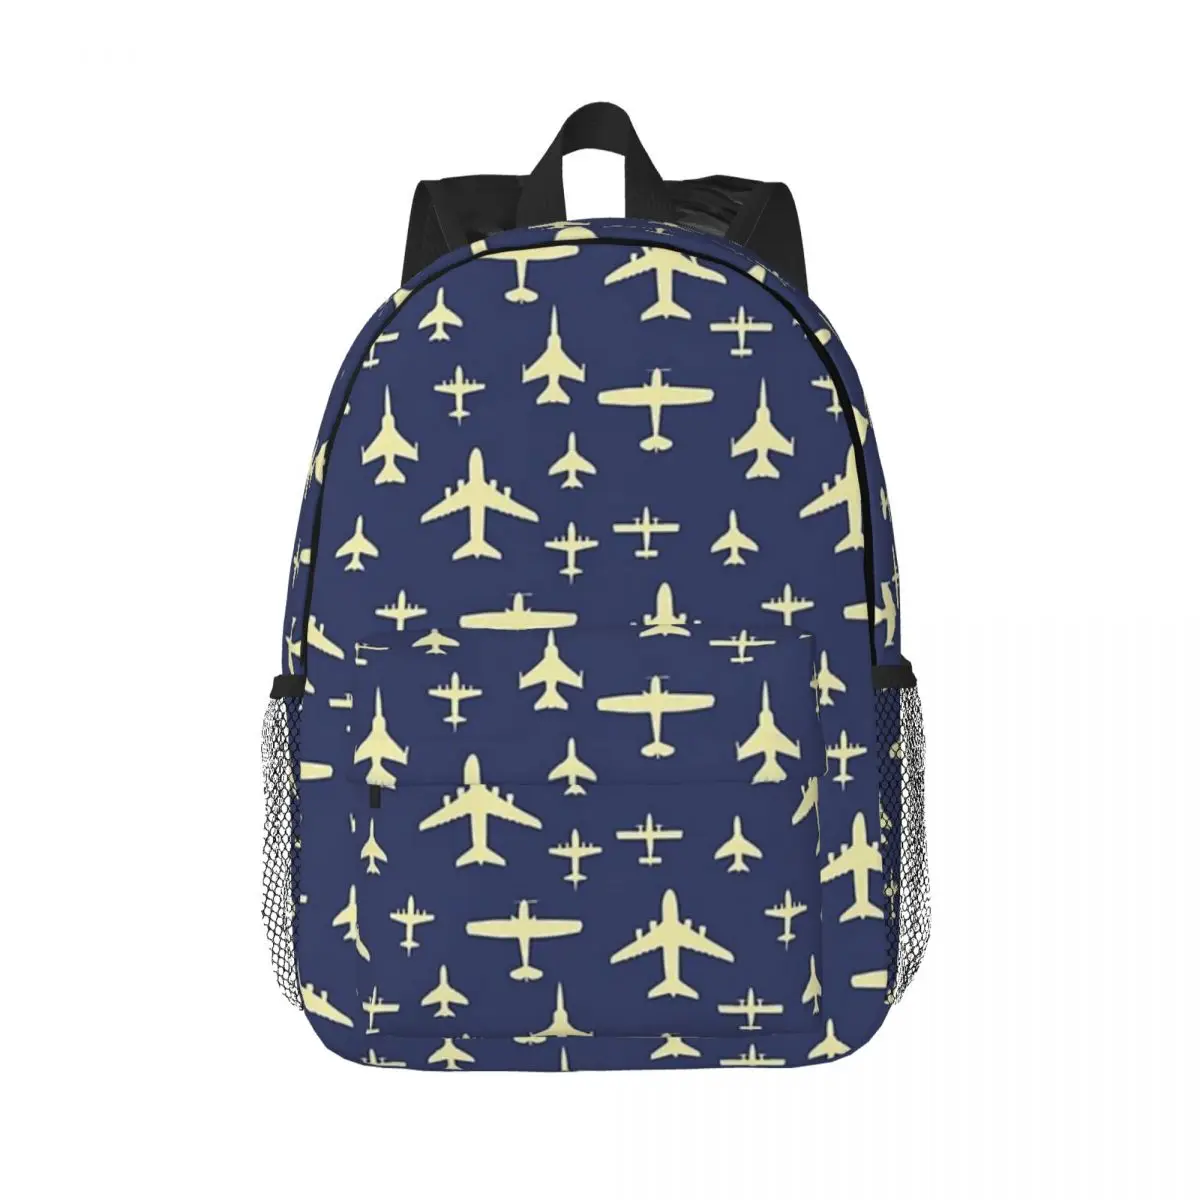 

Рюкзак Летающий с принтом самолетов, школьный ранец для мальчиков и девочек, портфель на плечо для ноутбука, темно-синий и бежевый цвета